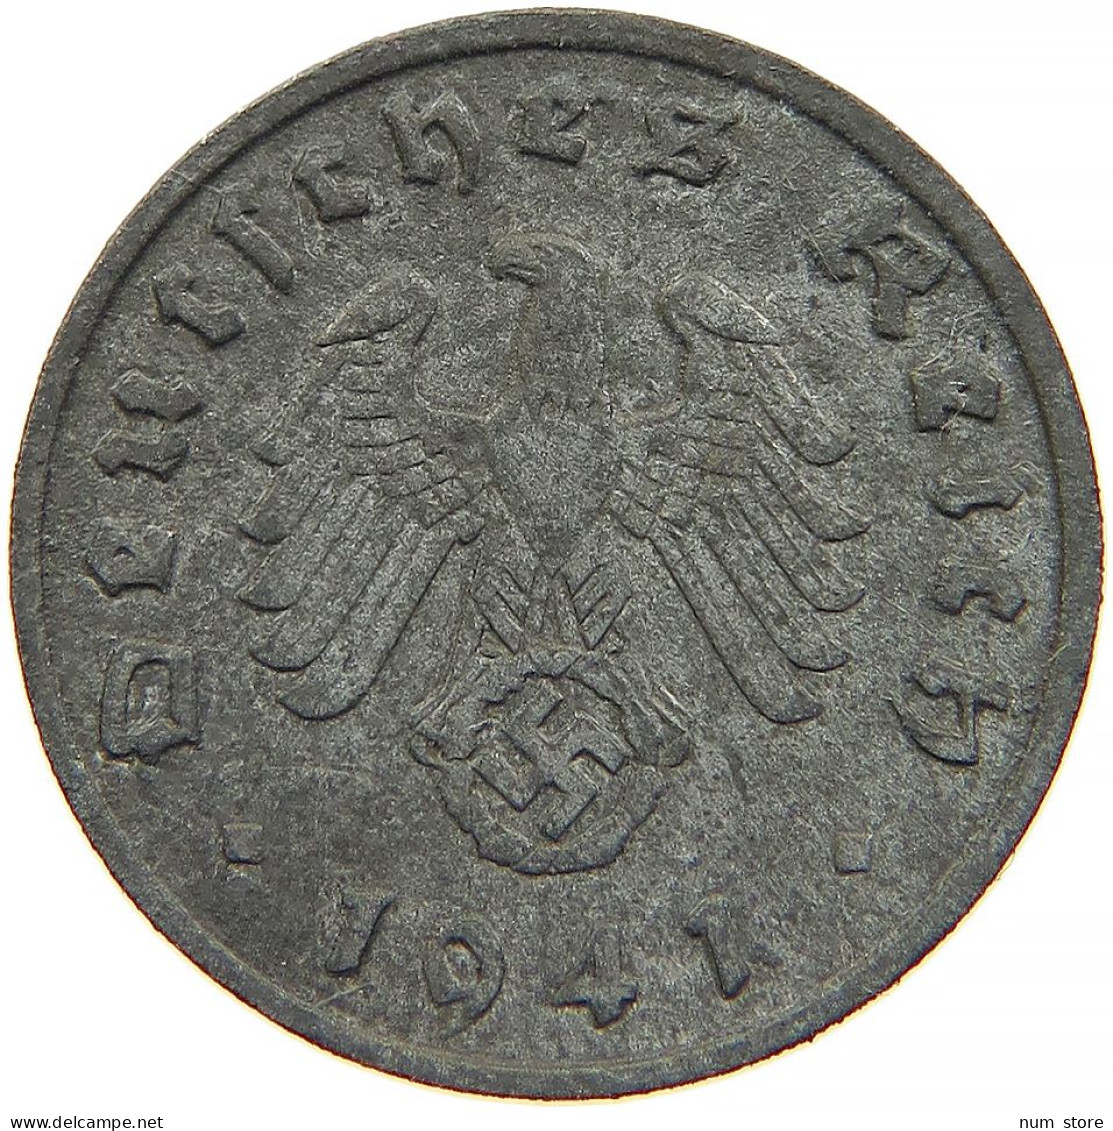 GERMANY 1 REICHSPFENNIG 1941 A #s091 0981 - 1 Reichspfennig